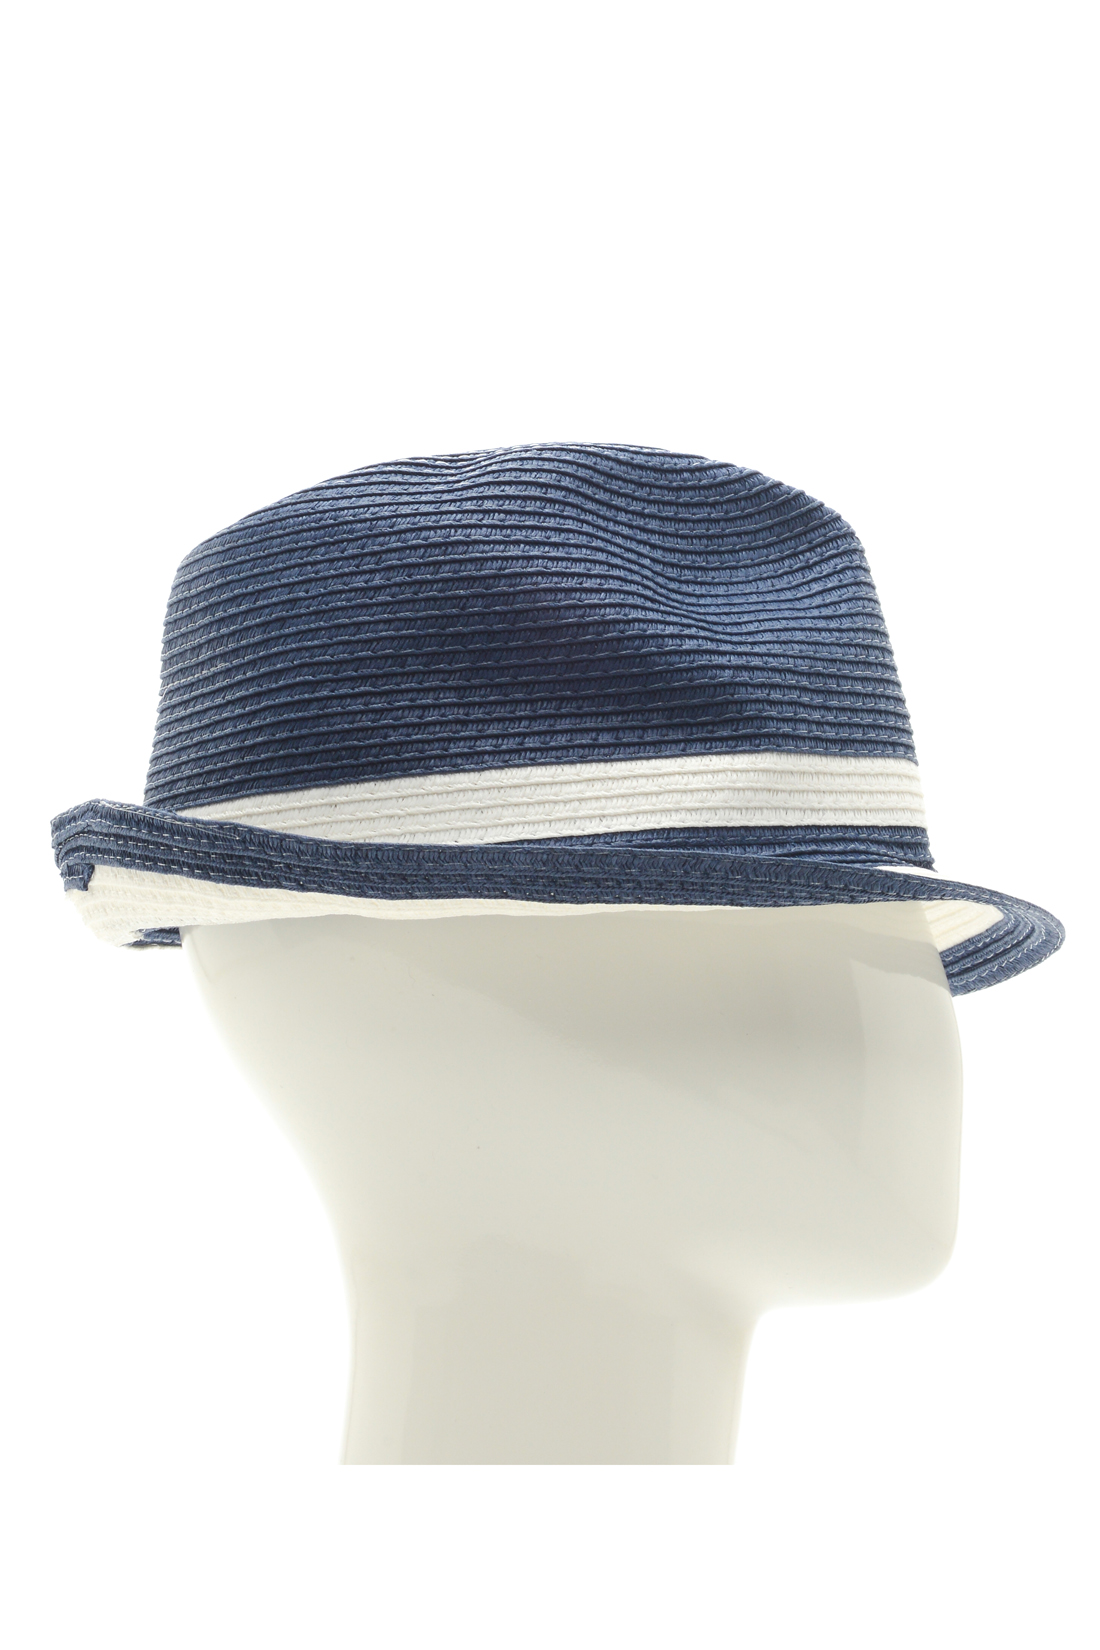 Шляпа в морском стиле (арт. baon B348003), размер Б/р 56, цвет синий Шляпа в морском стиле (арт. baon B348003) - фото 2